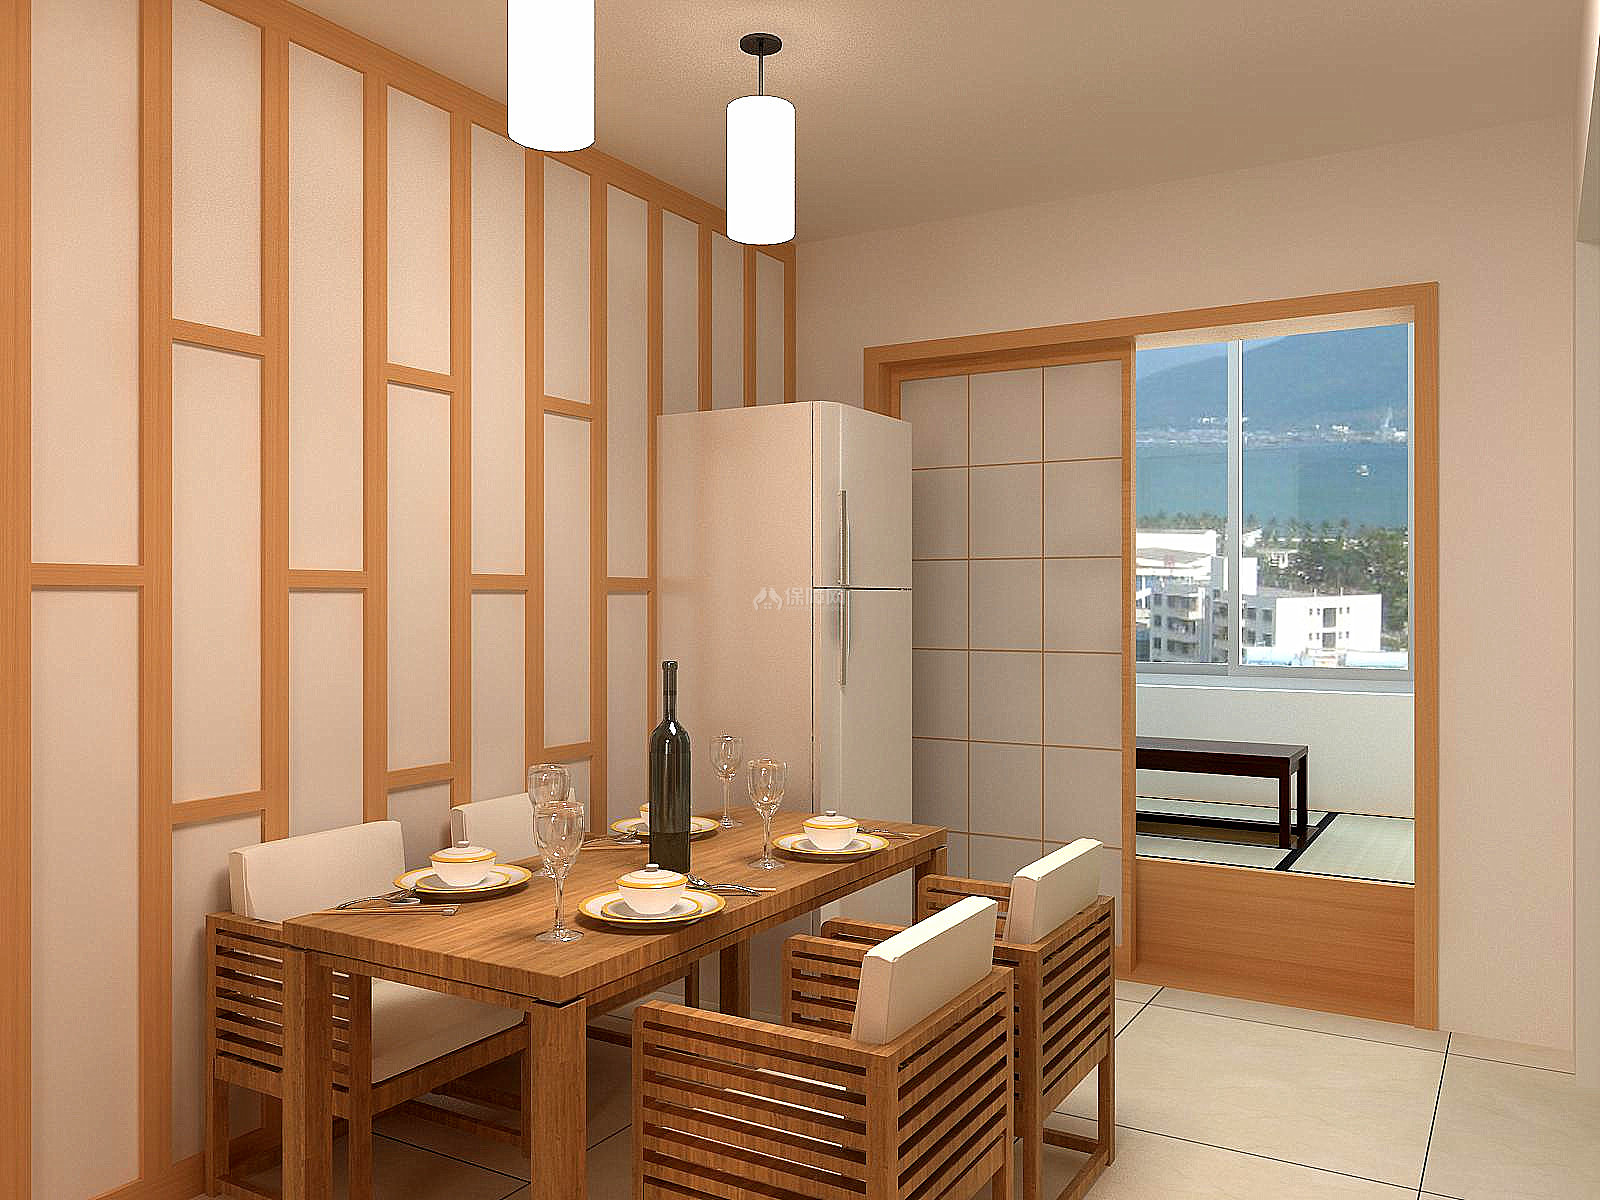 【木舍】木质简约日式住宅 | 梵之设计-建e网设计案例